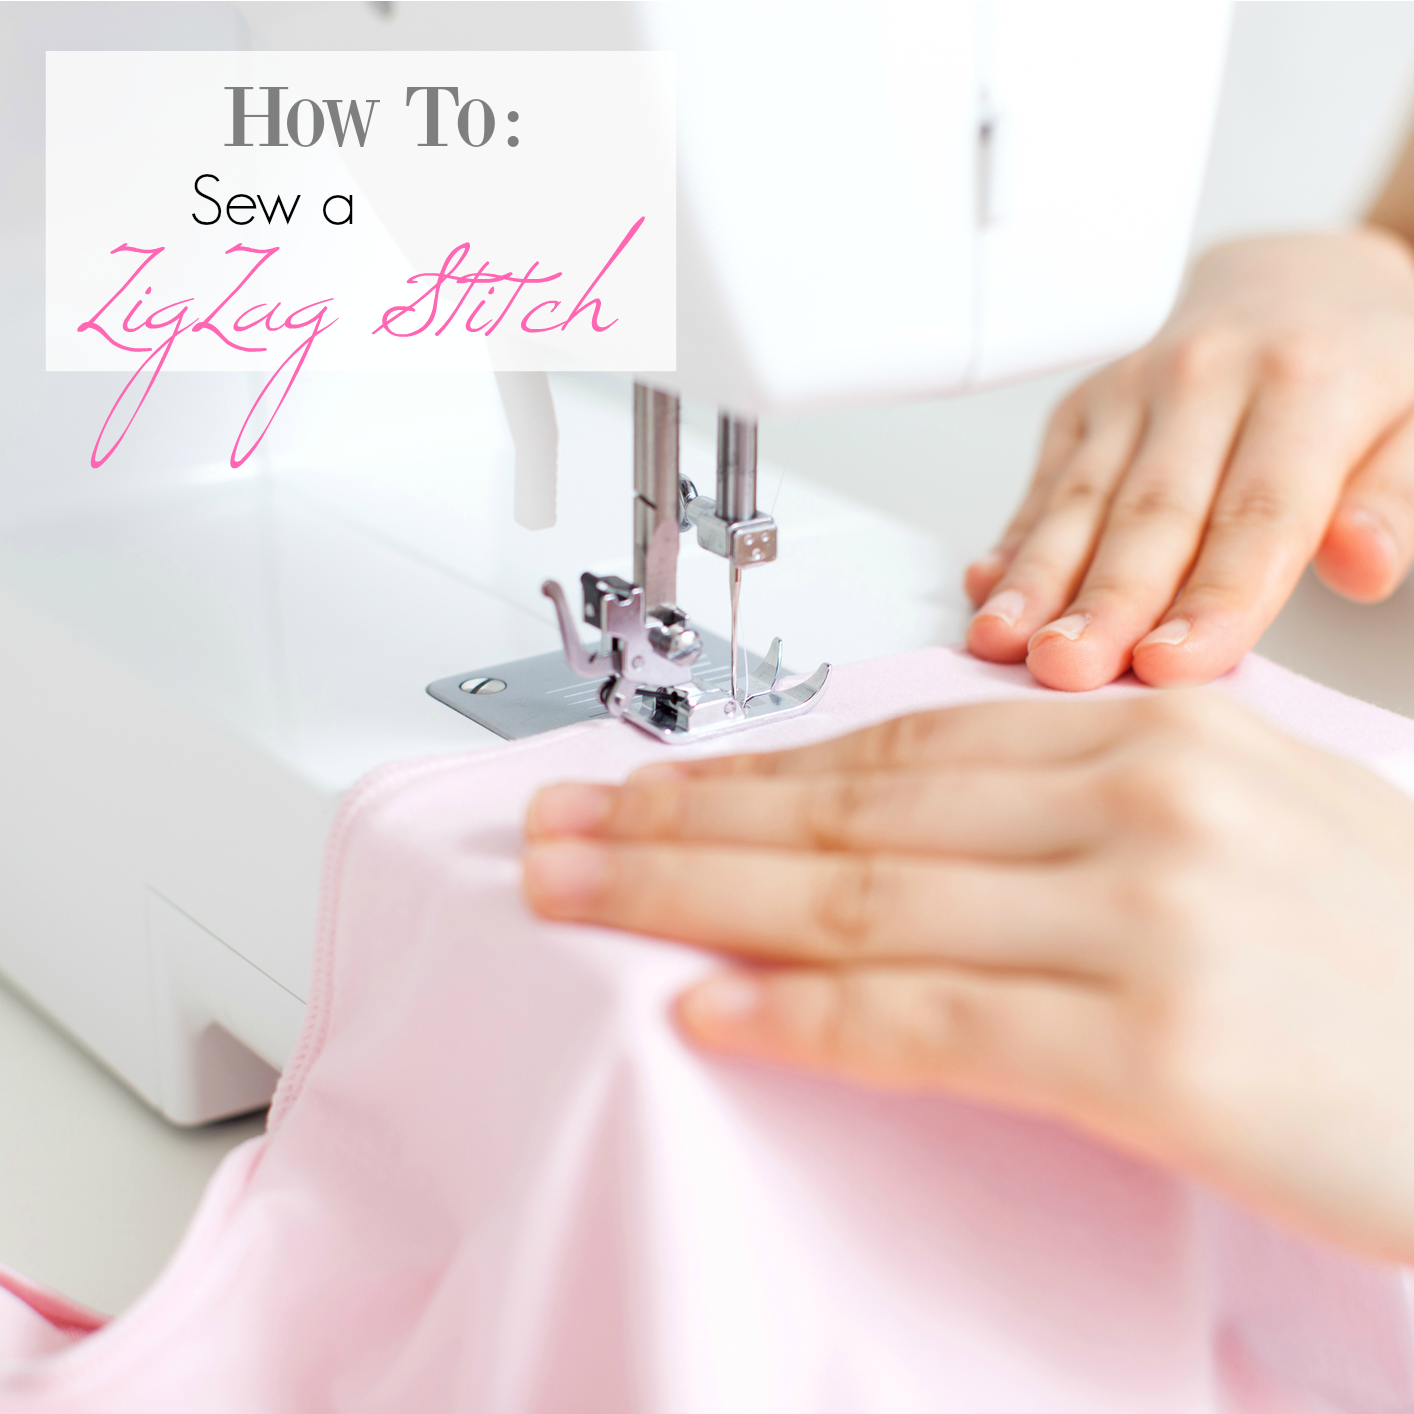 How to Sew a ZigZag Stitch